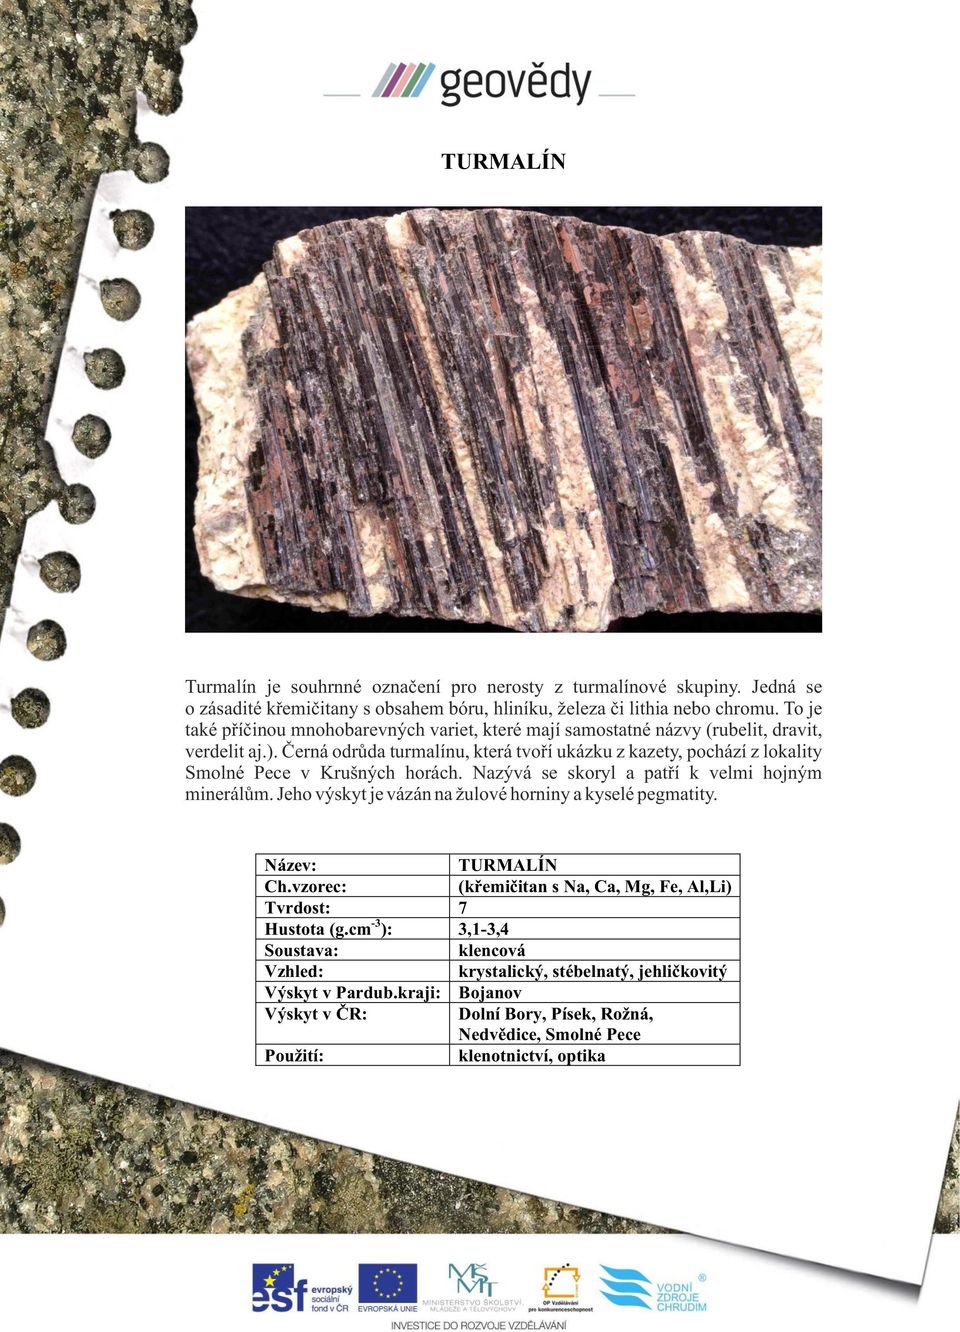 Černá odrůda turmalínu, která tvoří ukázku z kazety, pochází z lokality Smolné Pece v Krušných horách. Nazývá se skoryl a patří k velmi hojným minerálům.